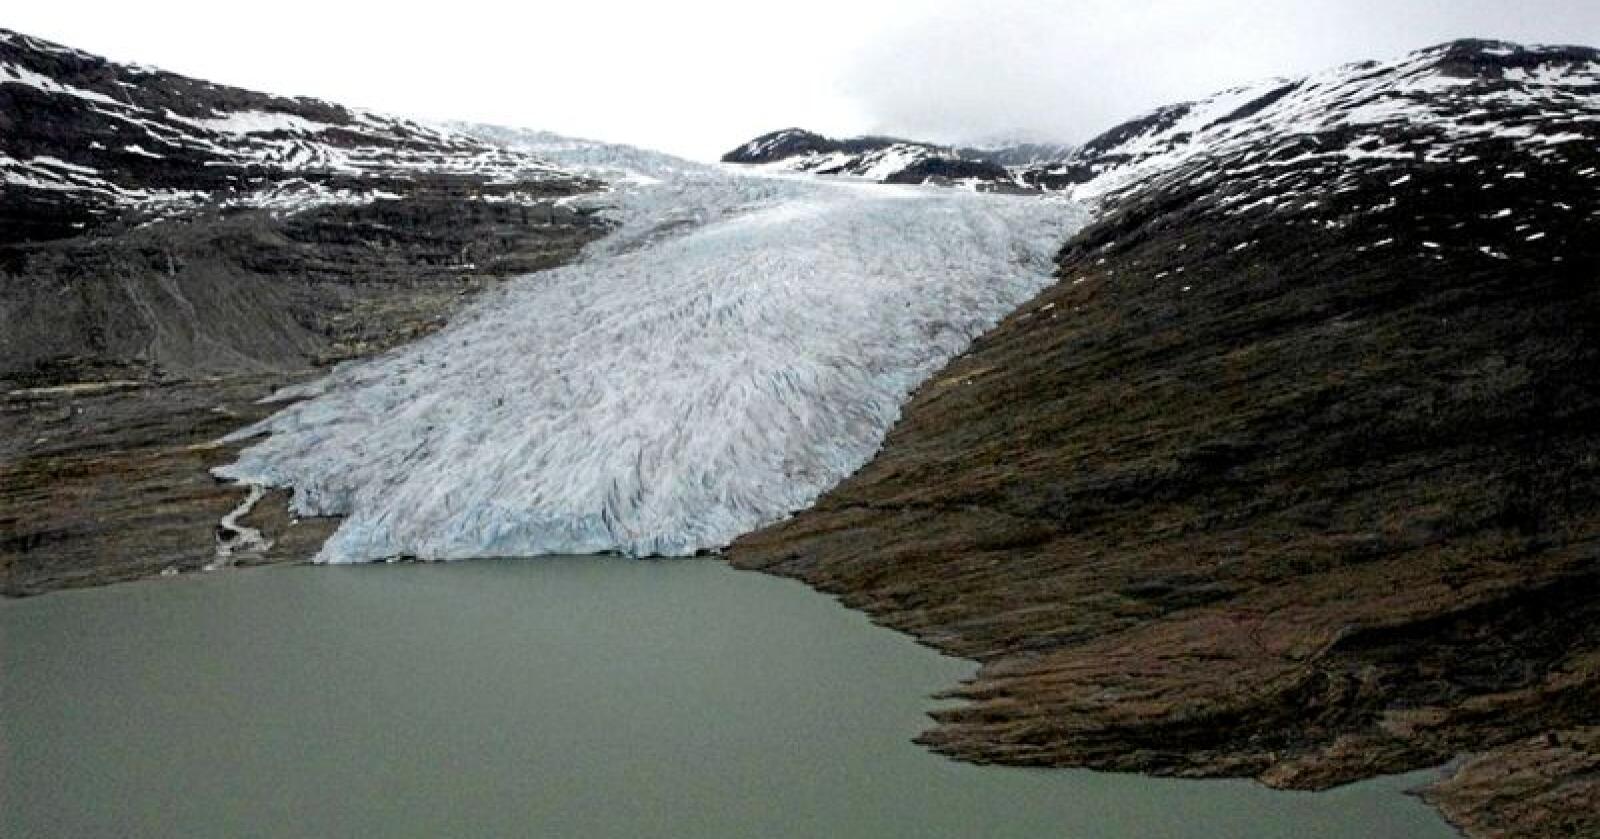 Selskapet Svaice vil hente ut is fra Norges nest største isbre, Svartisen i Nordland, for å lage isbiter som skal selges til restauranter verden over. Bildet er fra 2009. Foto: 330-Skvadronen / Forsvaret / NTB scanpix